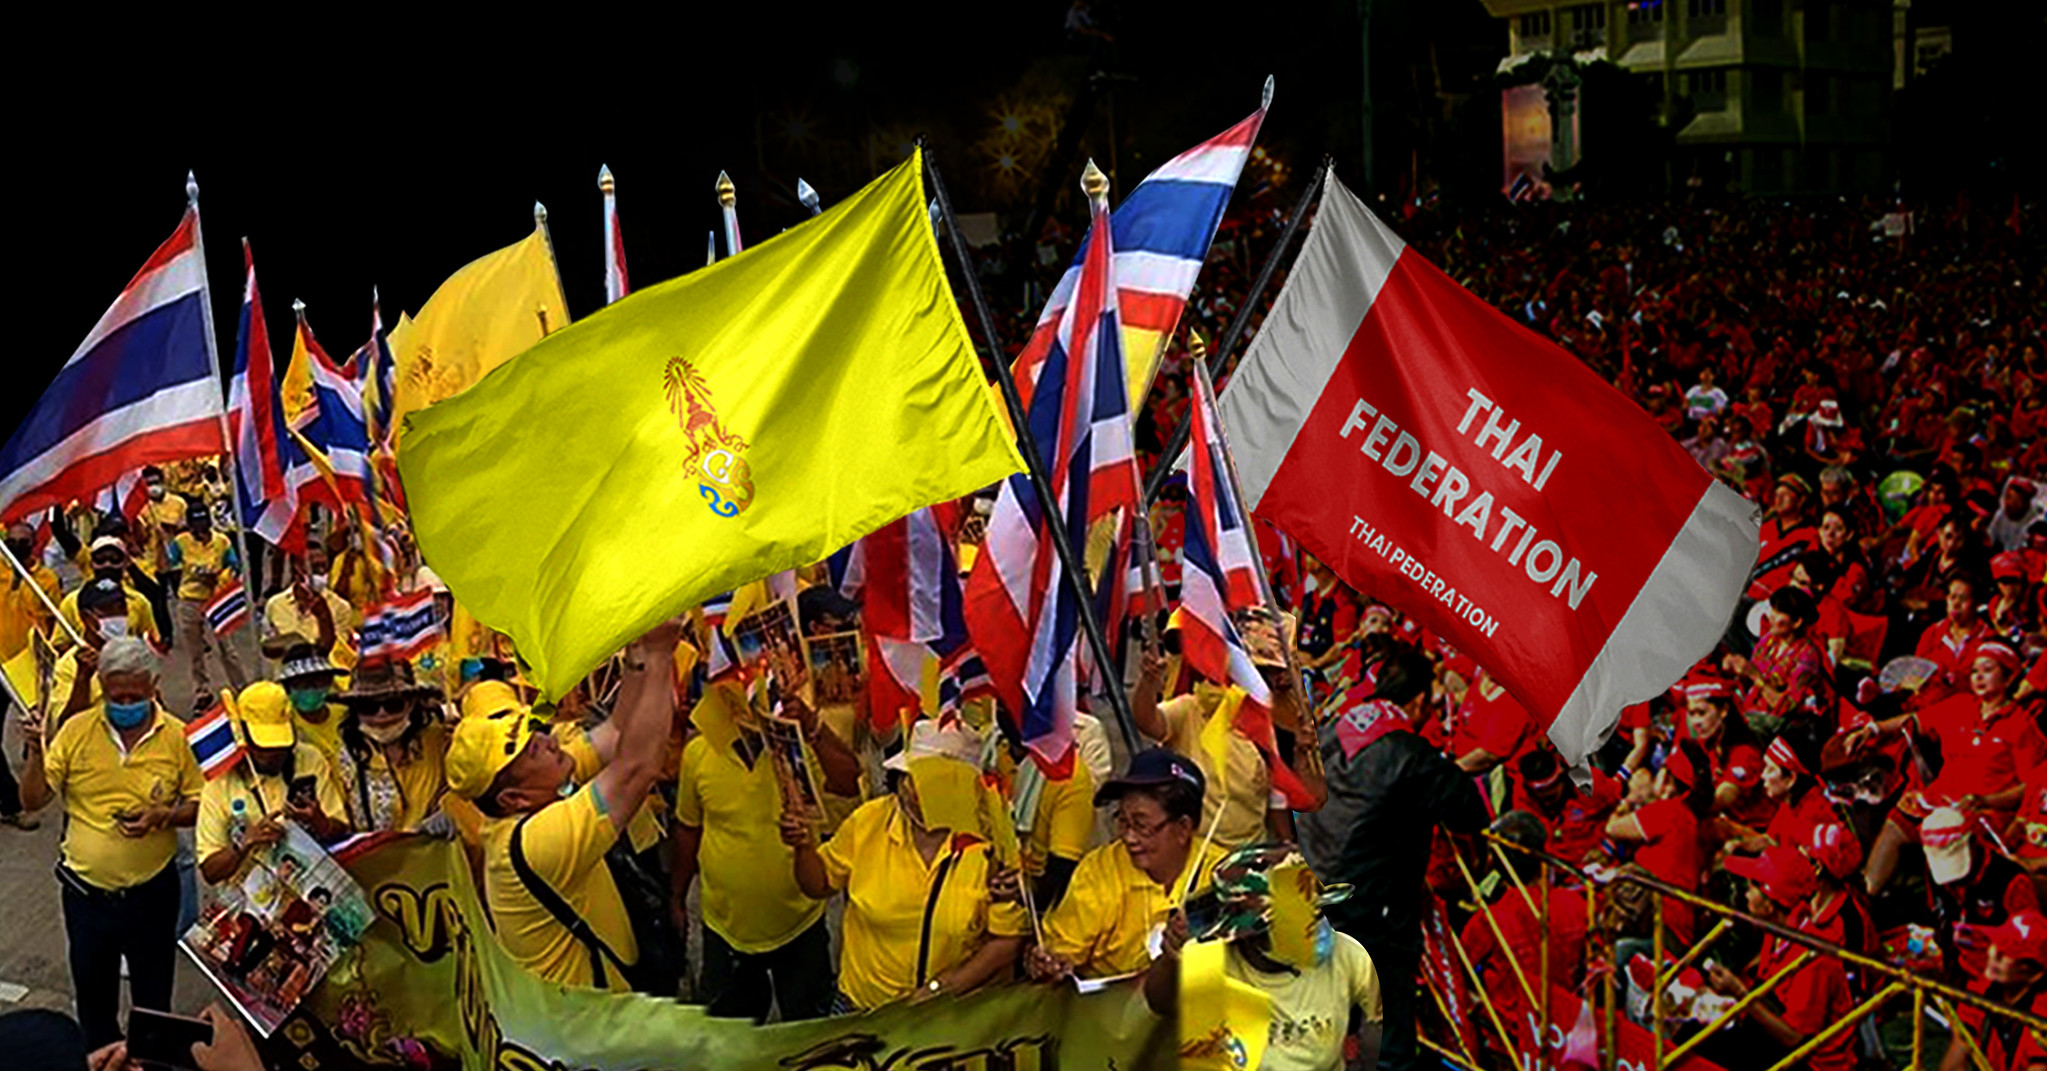 นันทิดา รักวงษ์: การต่อสู้ชิงอัตลักษณ์ไทยระหว่างกลุ่มราชาชาตินิยมกับสาธารณรัฐ